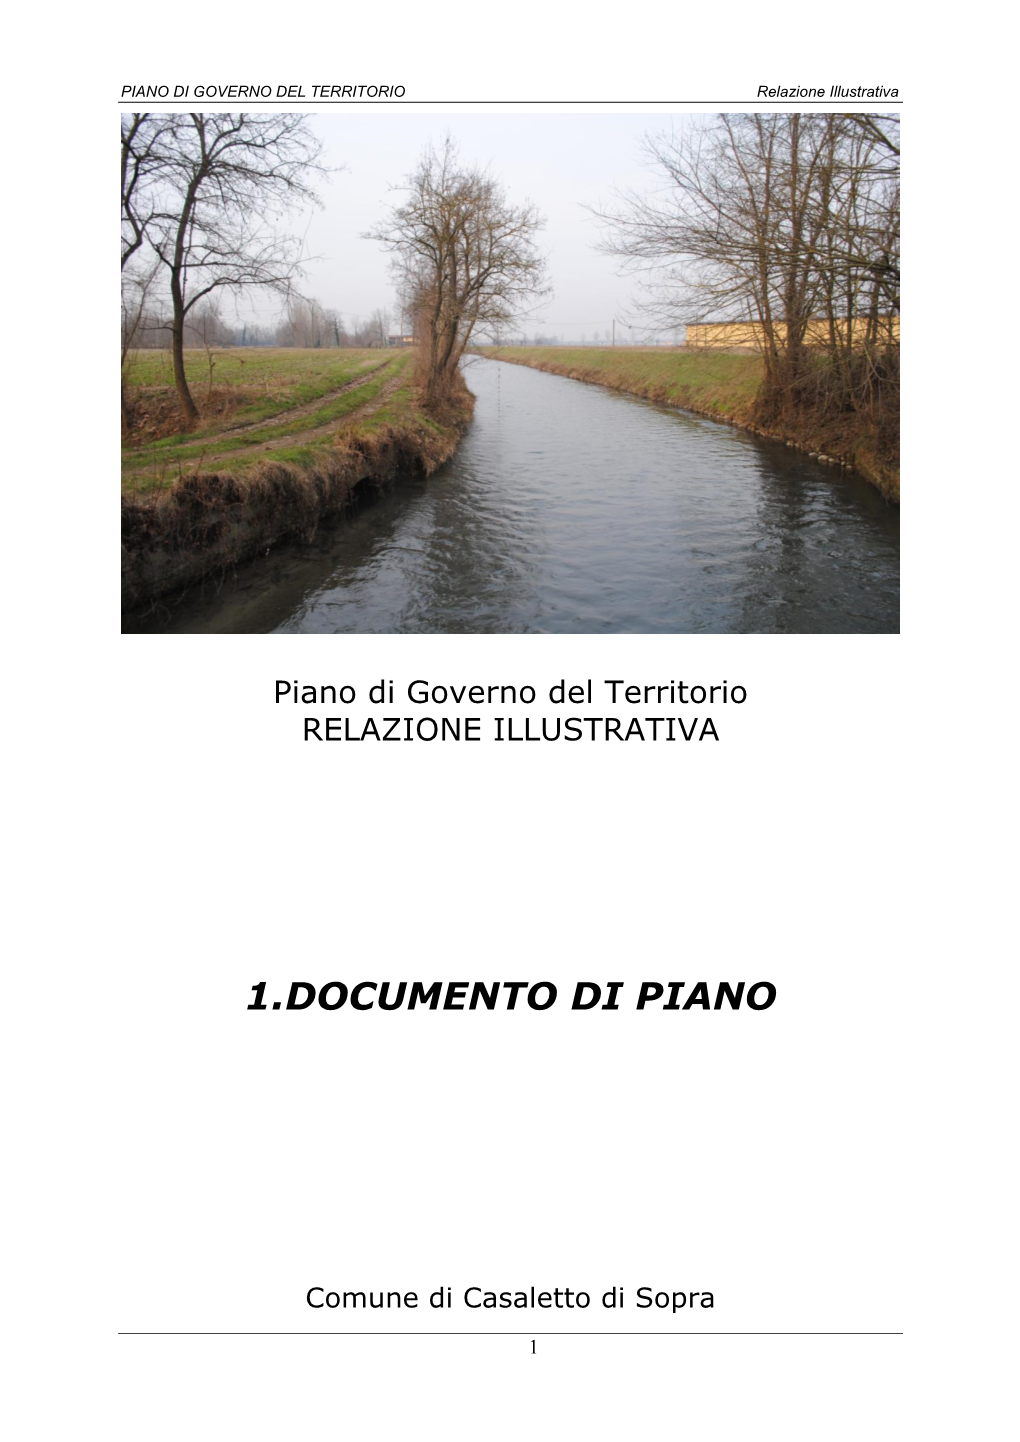 1.Documento Di Piano